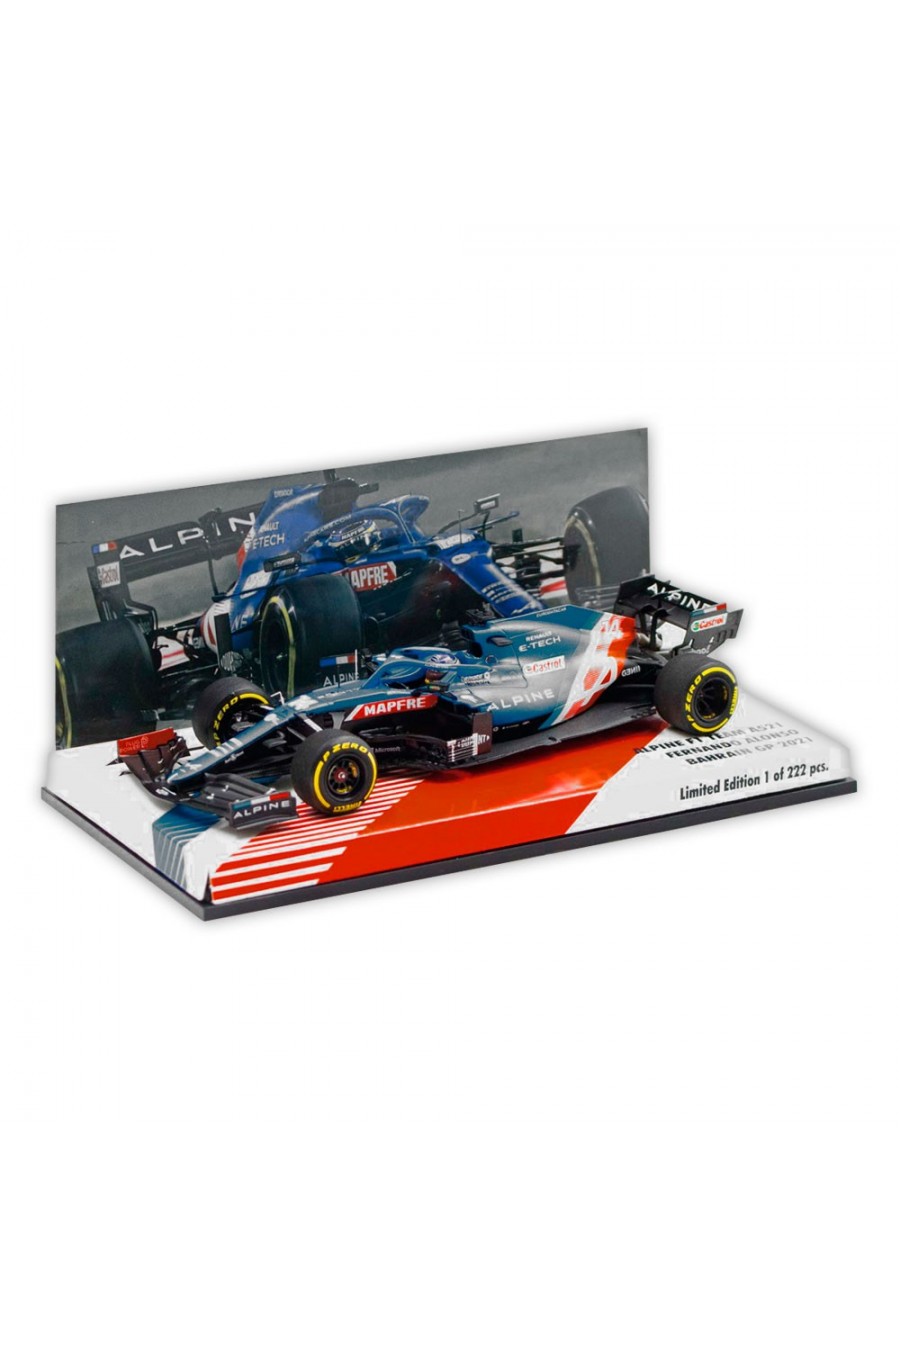 Miniatura 1:43 Coche Alpine F1 A521 2021 'Fernando Alonso'